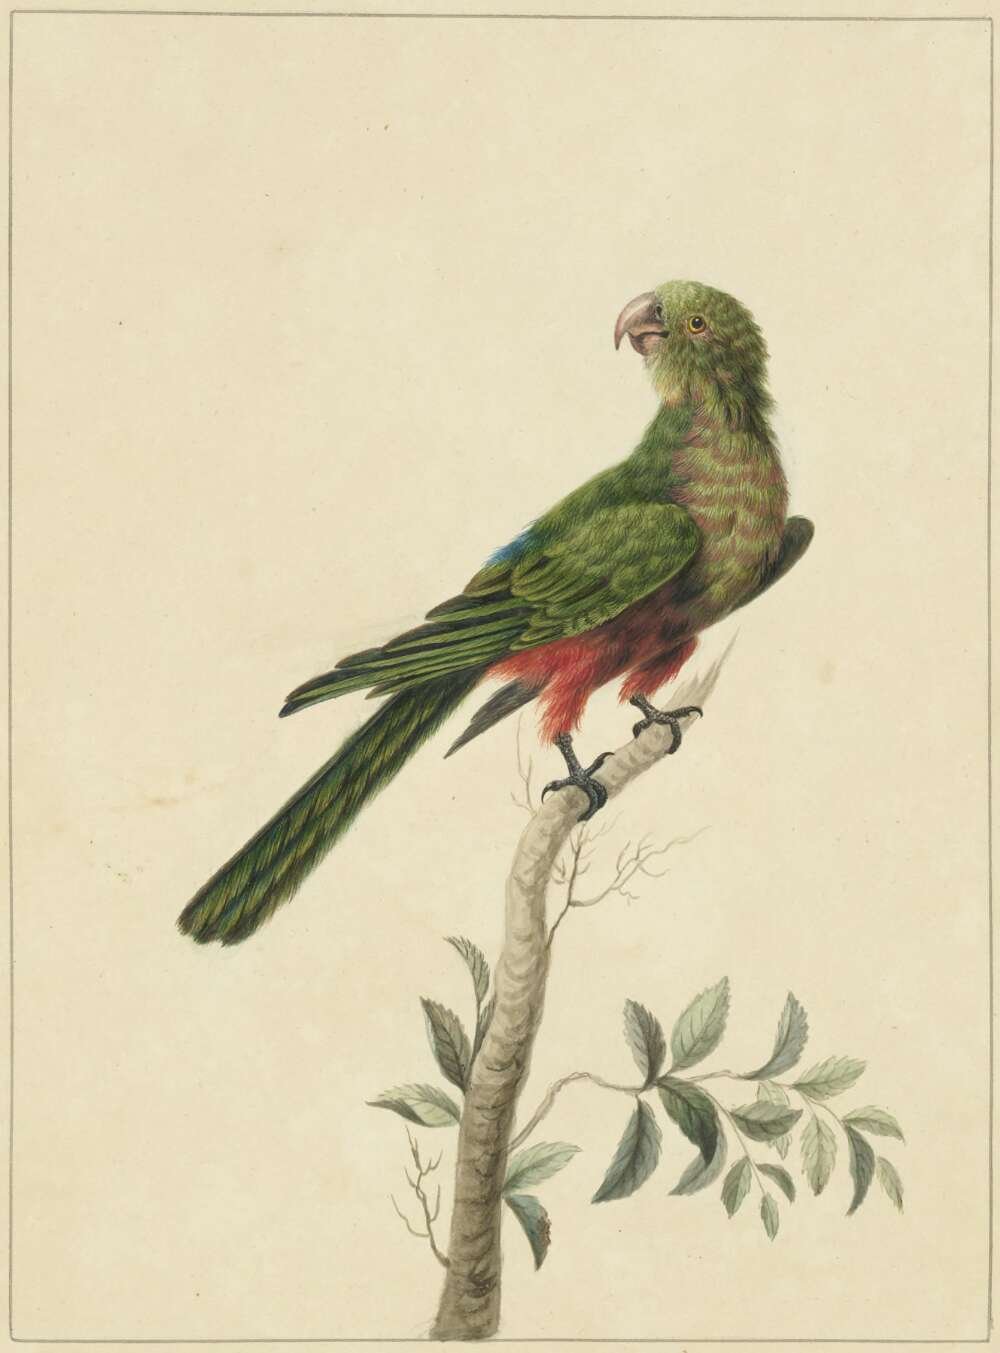 Sarah Stone, Tabuan Parrot, c.1790